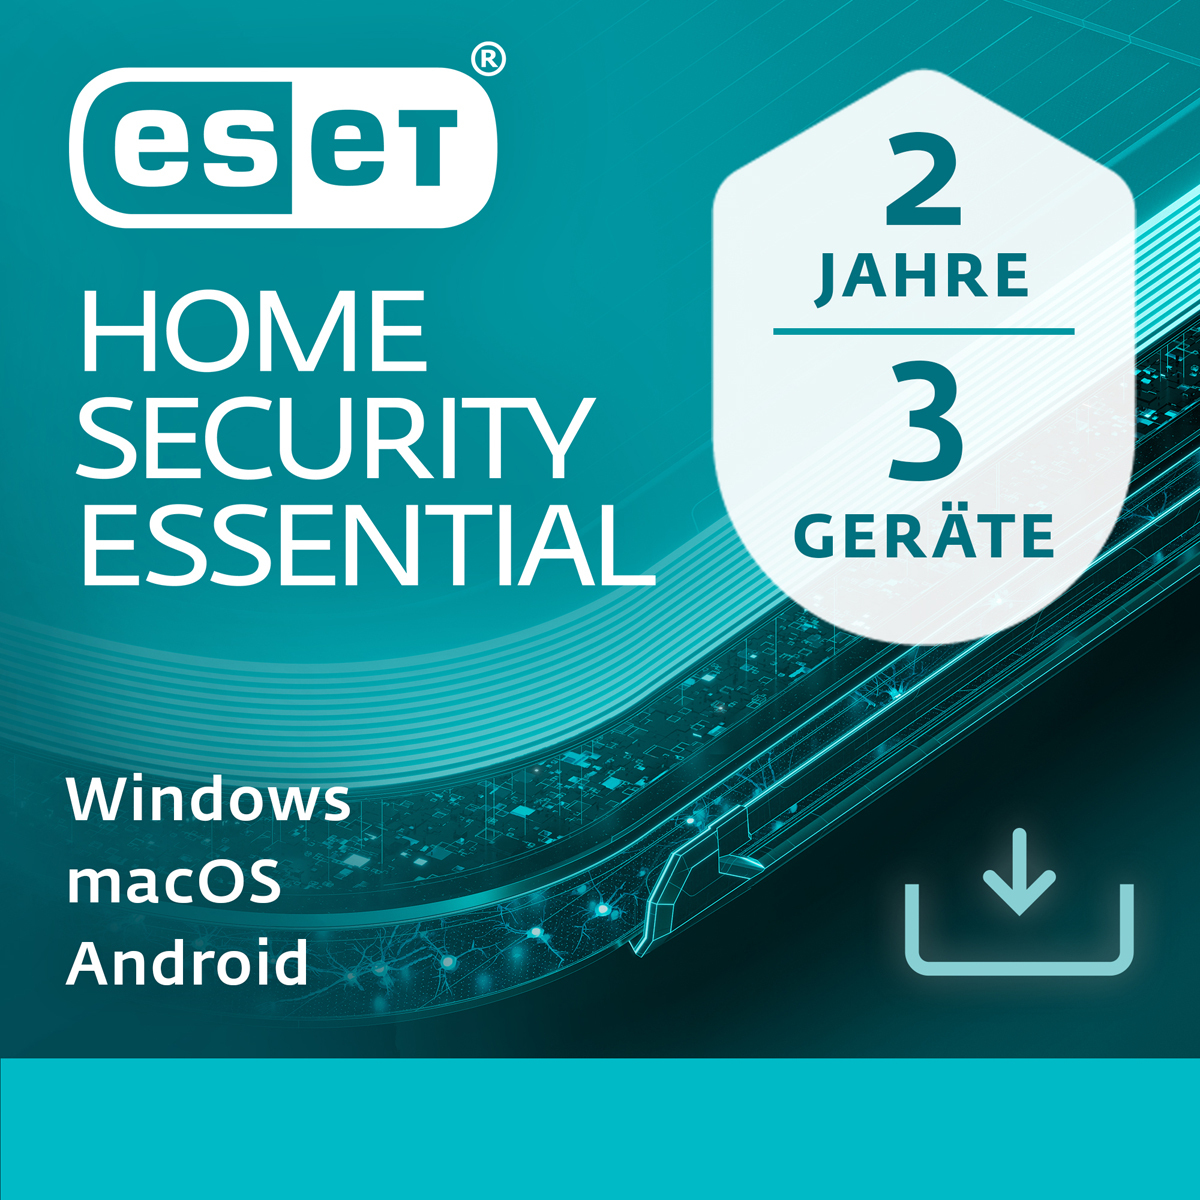 ESET HOME Security Essential [3 Gerät - 2 Jahre] von Eset